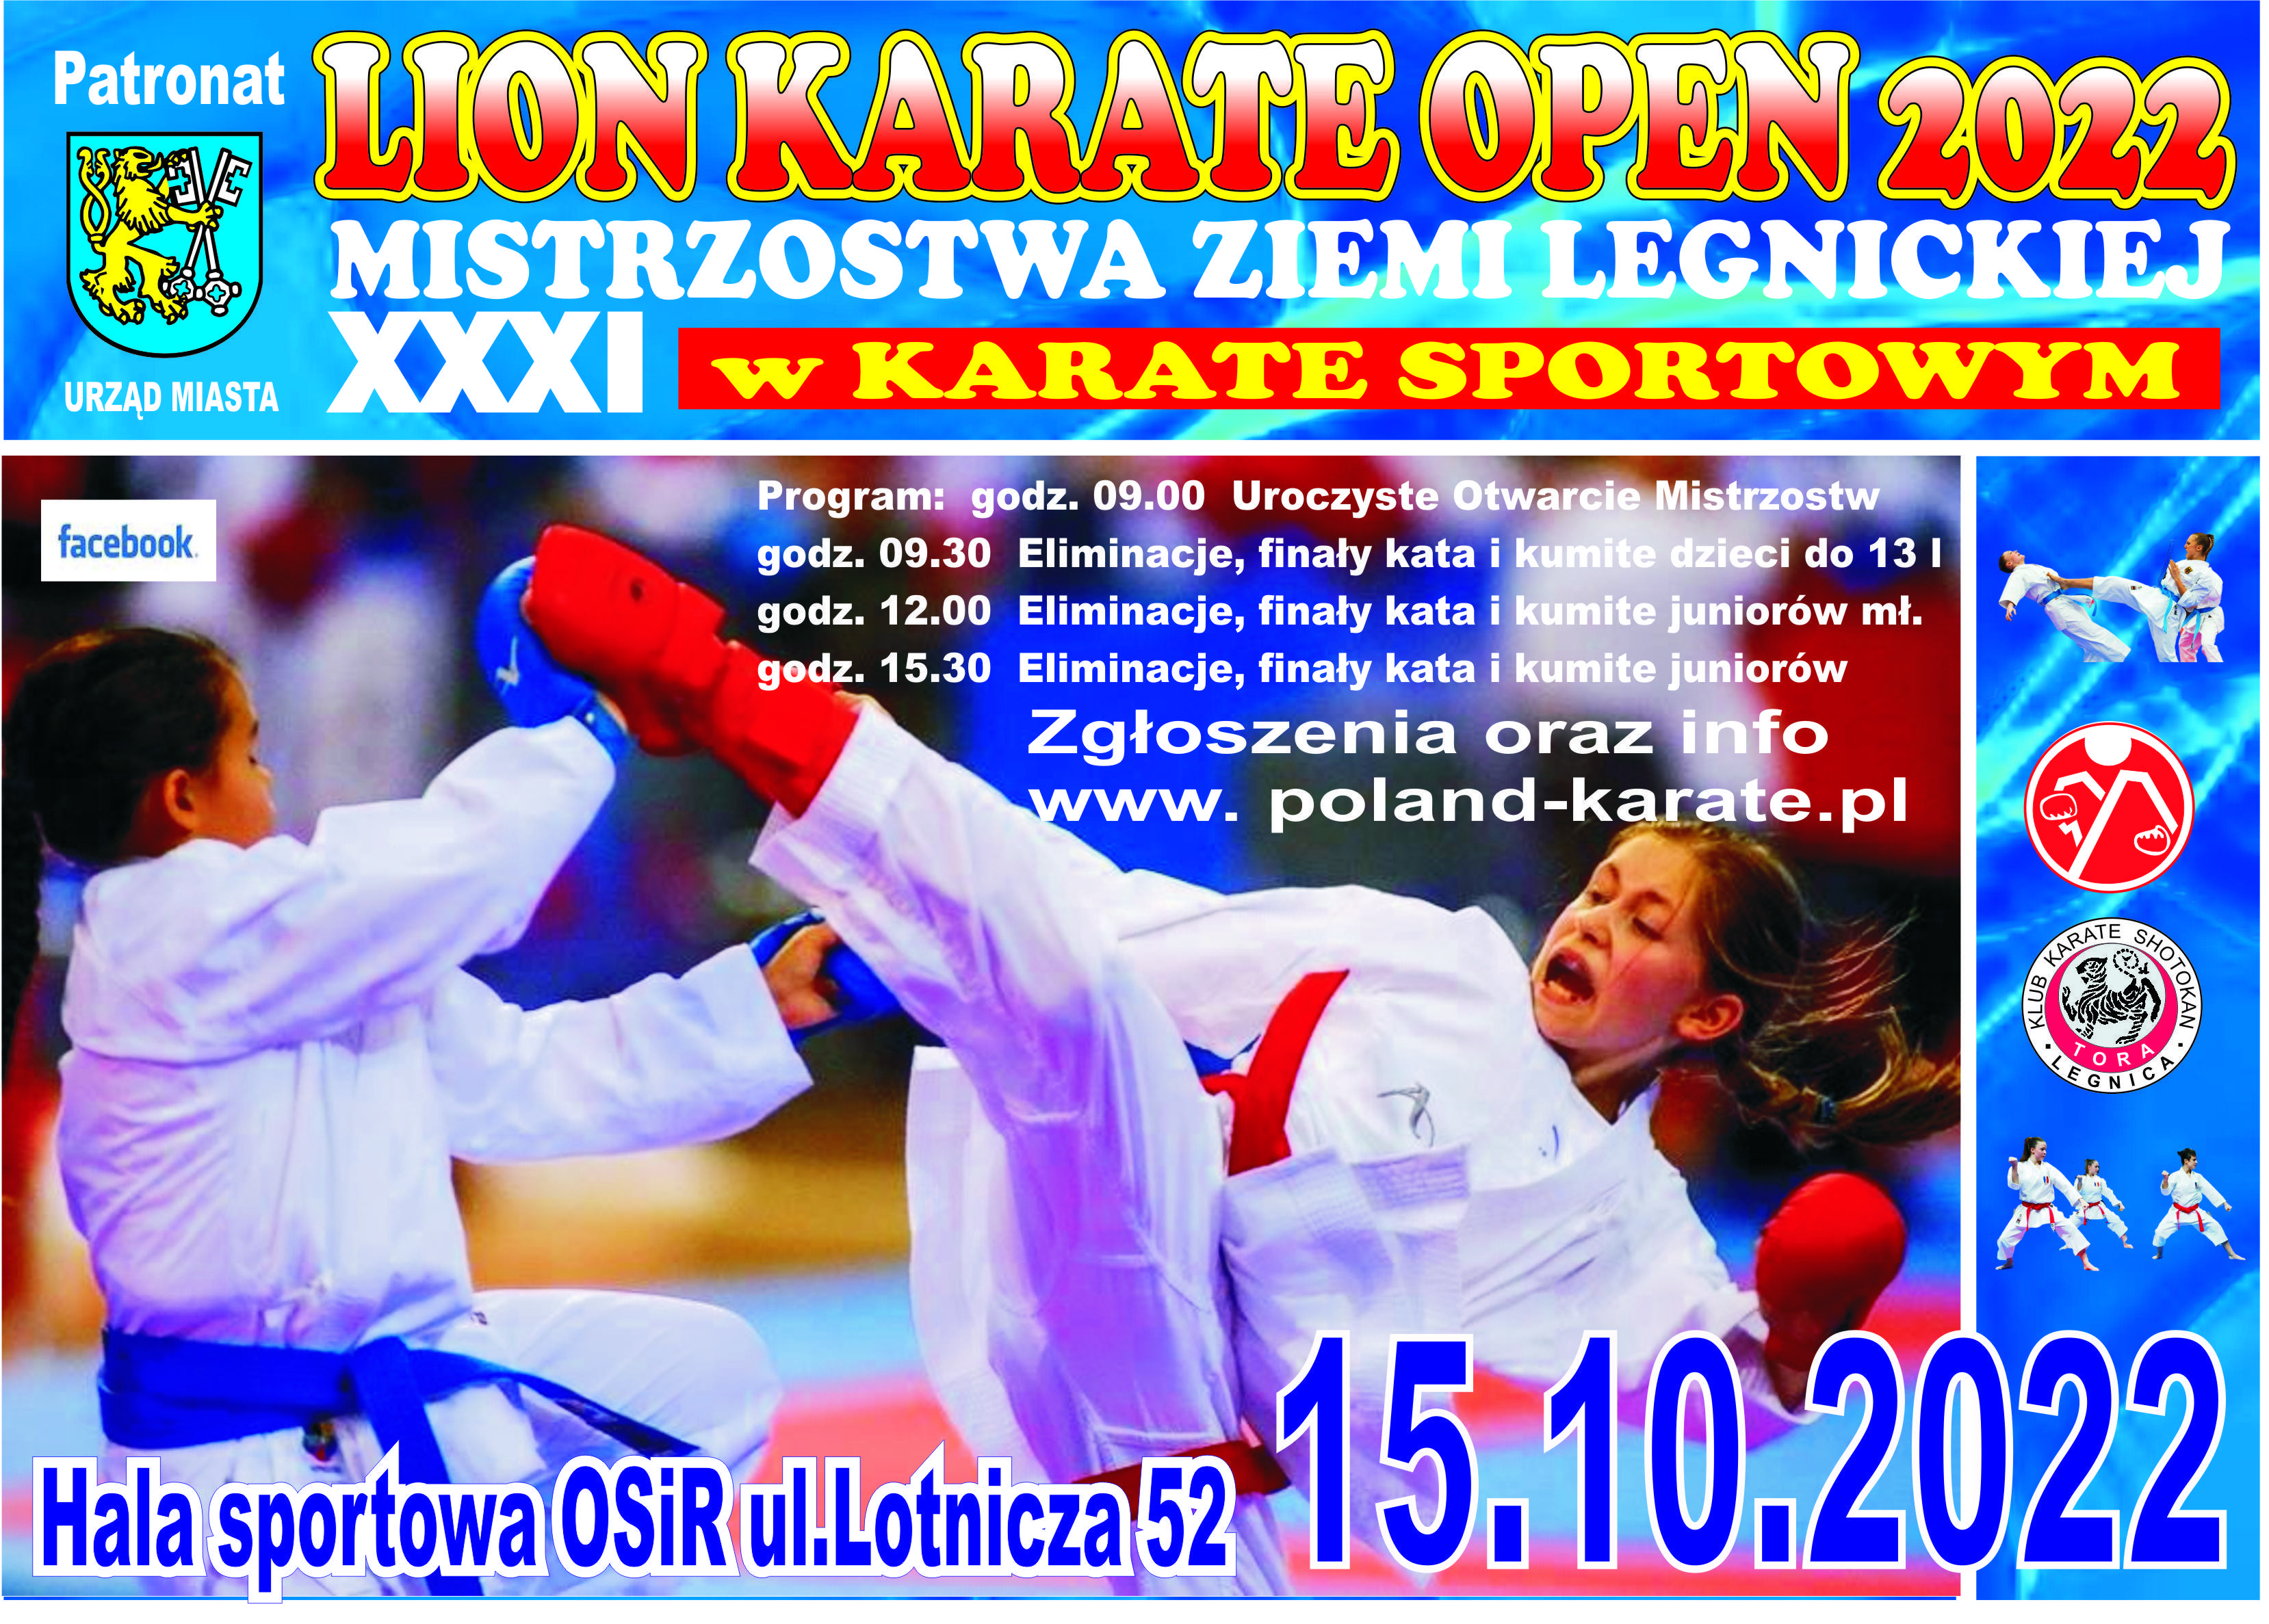 LION KARATE OPEN 2022- XXXII Mistrzostwa Ziemi Legnickiej w Karate Sportowym.